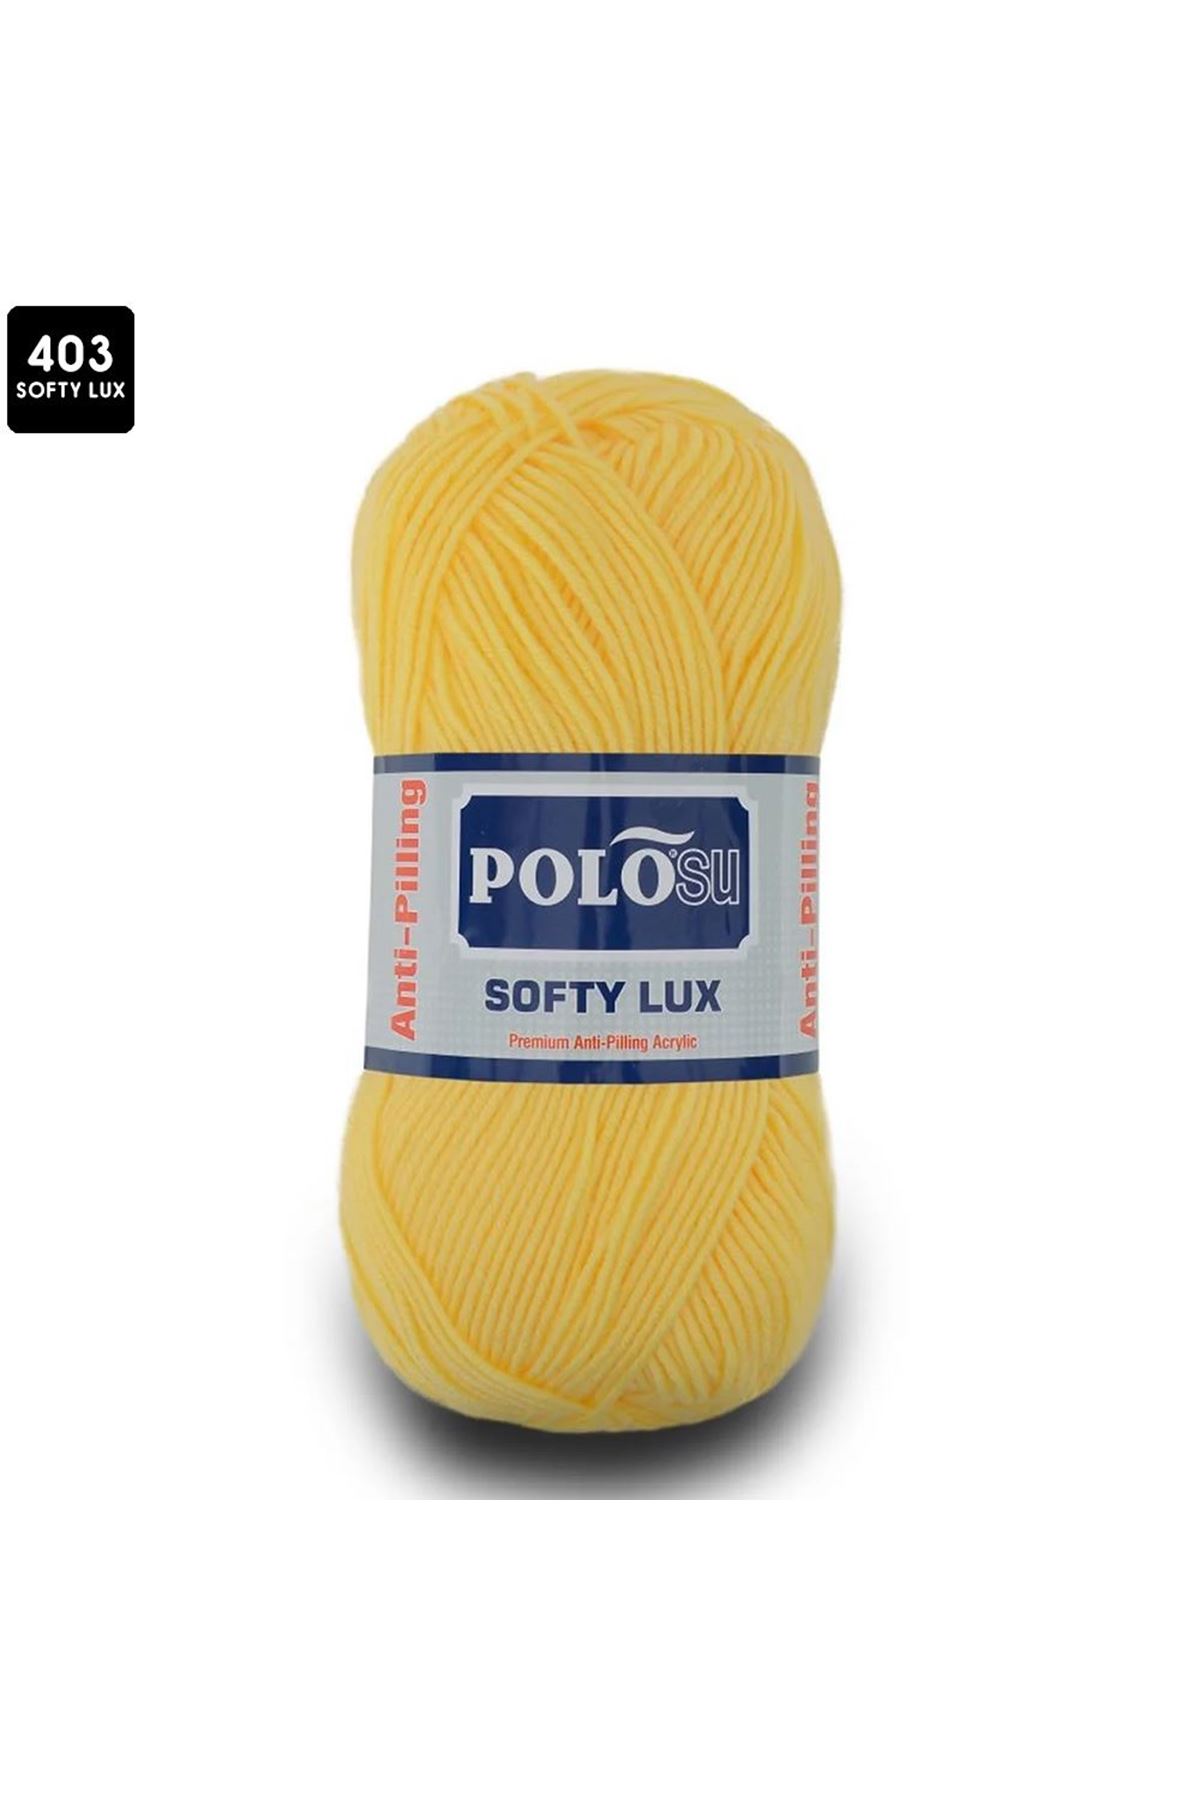 PoloSu Softy Lux Renk No:403